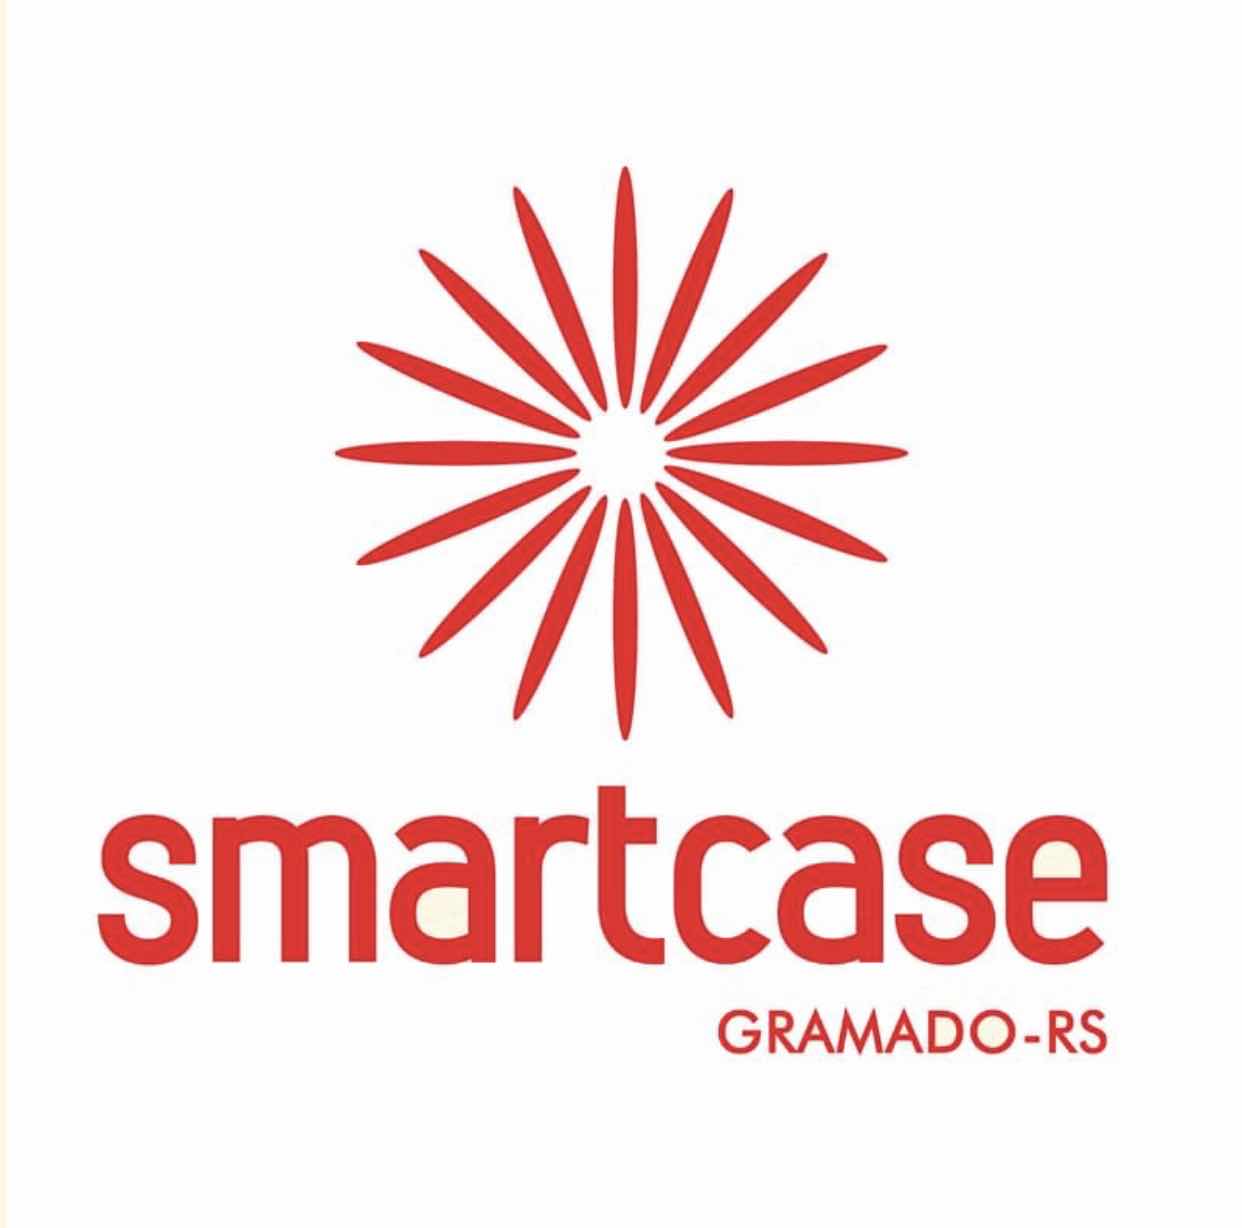 Smartcase Gramado